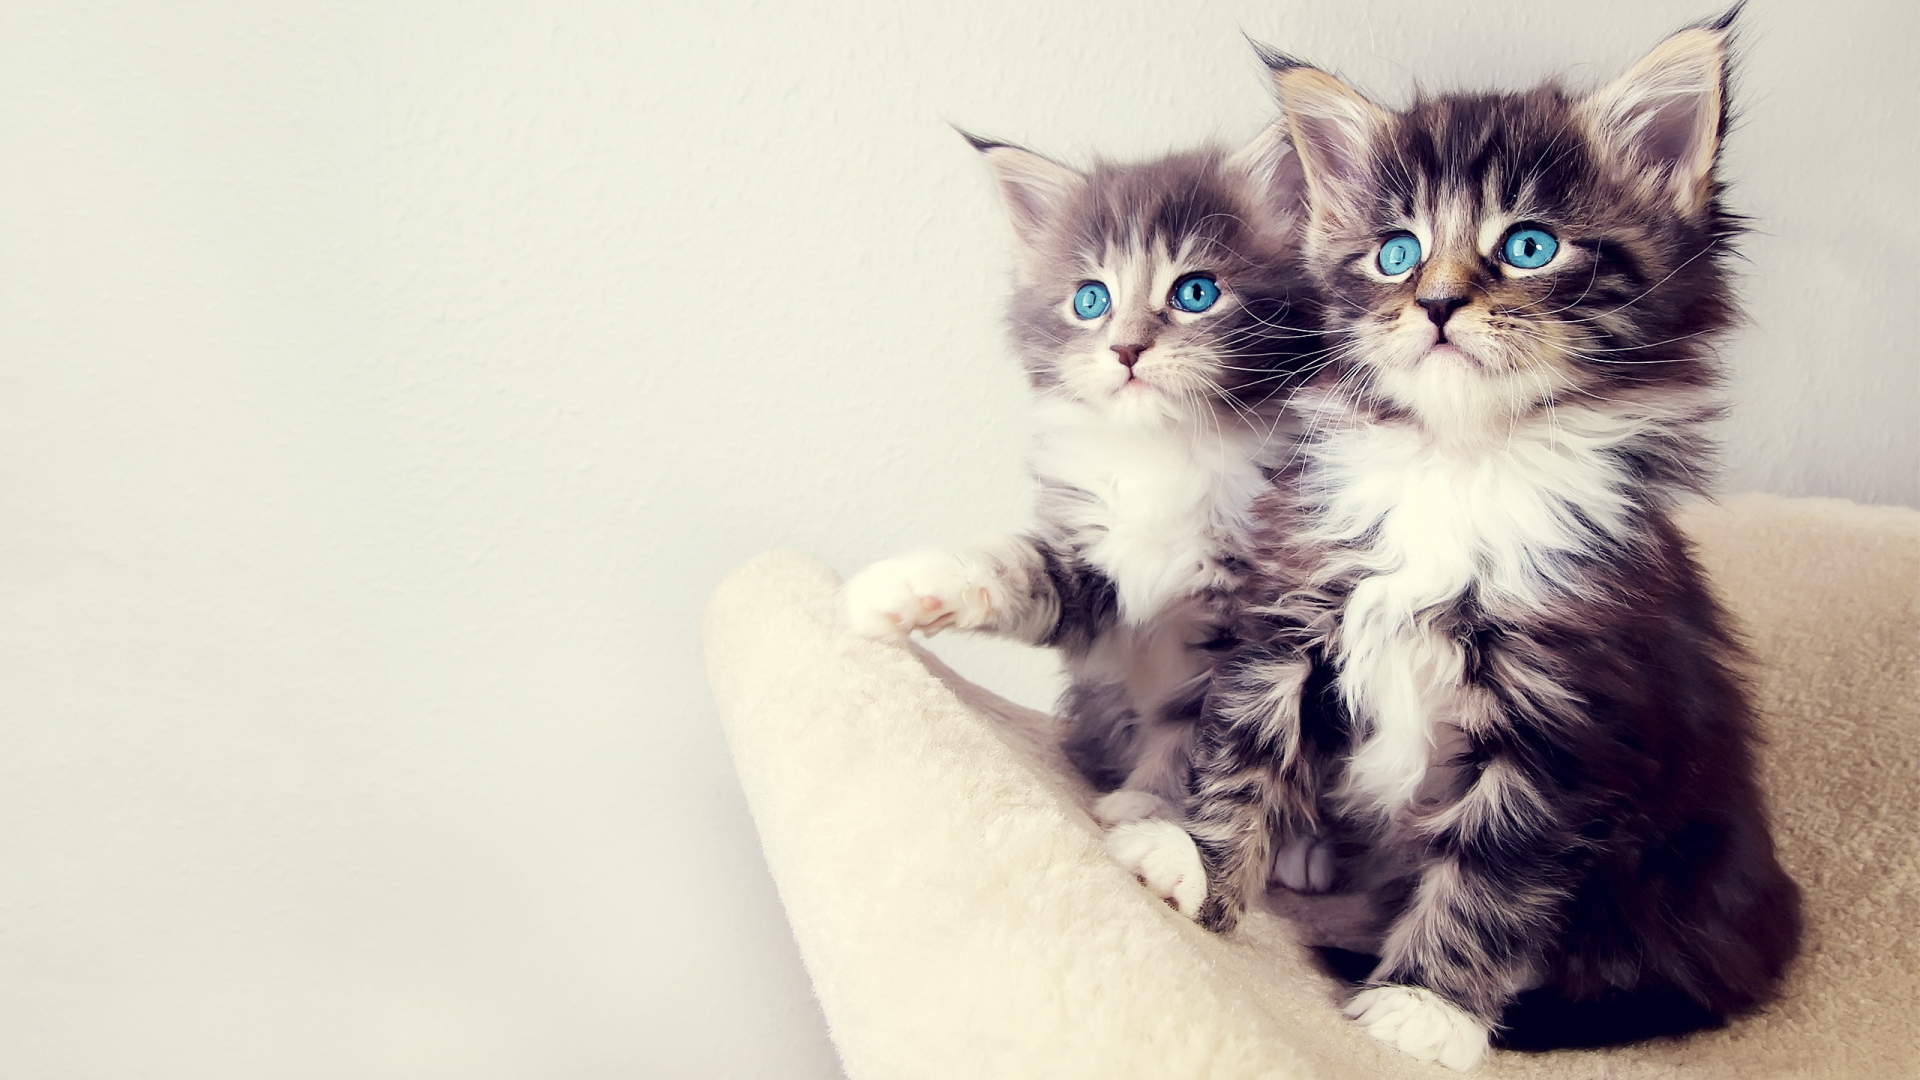 Gorgeous Kittens for 1920 x 1080 HDTV 1080p resolution